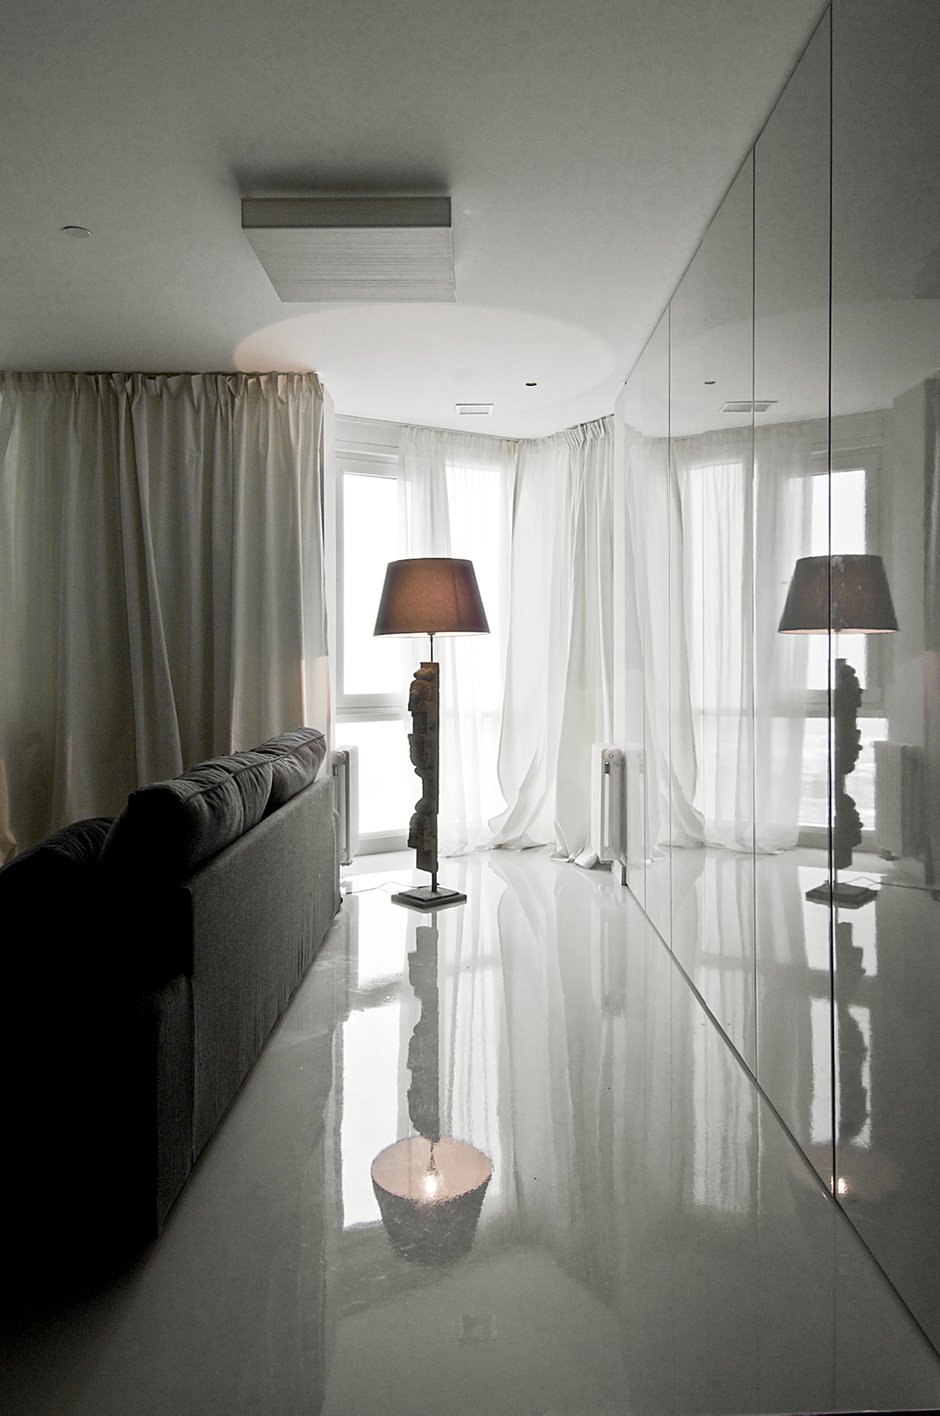 Фотография: Гостиная в стиле Современный, Квартира, Дома и квартиры, IKEA, Проект недели – фото на INMYROOM